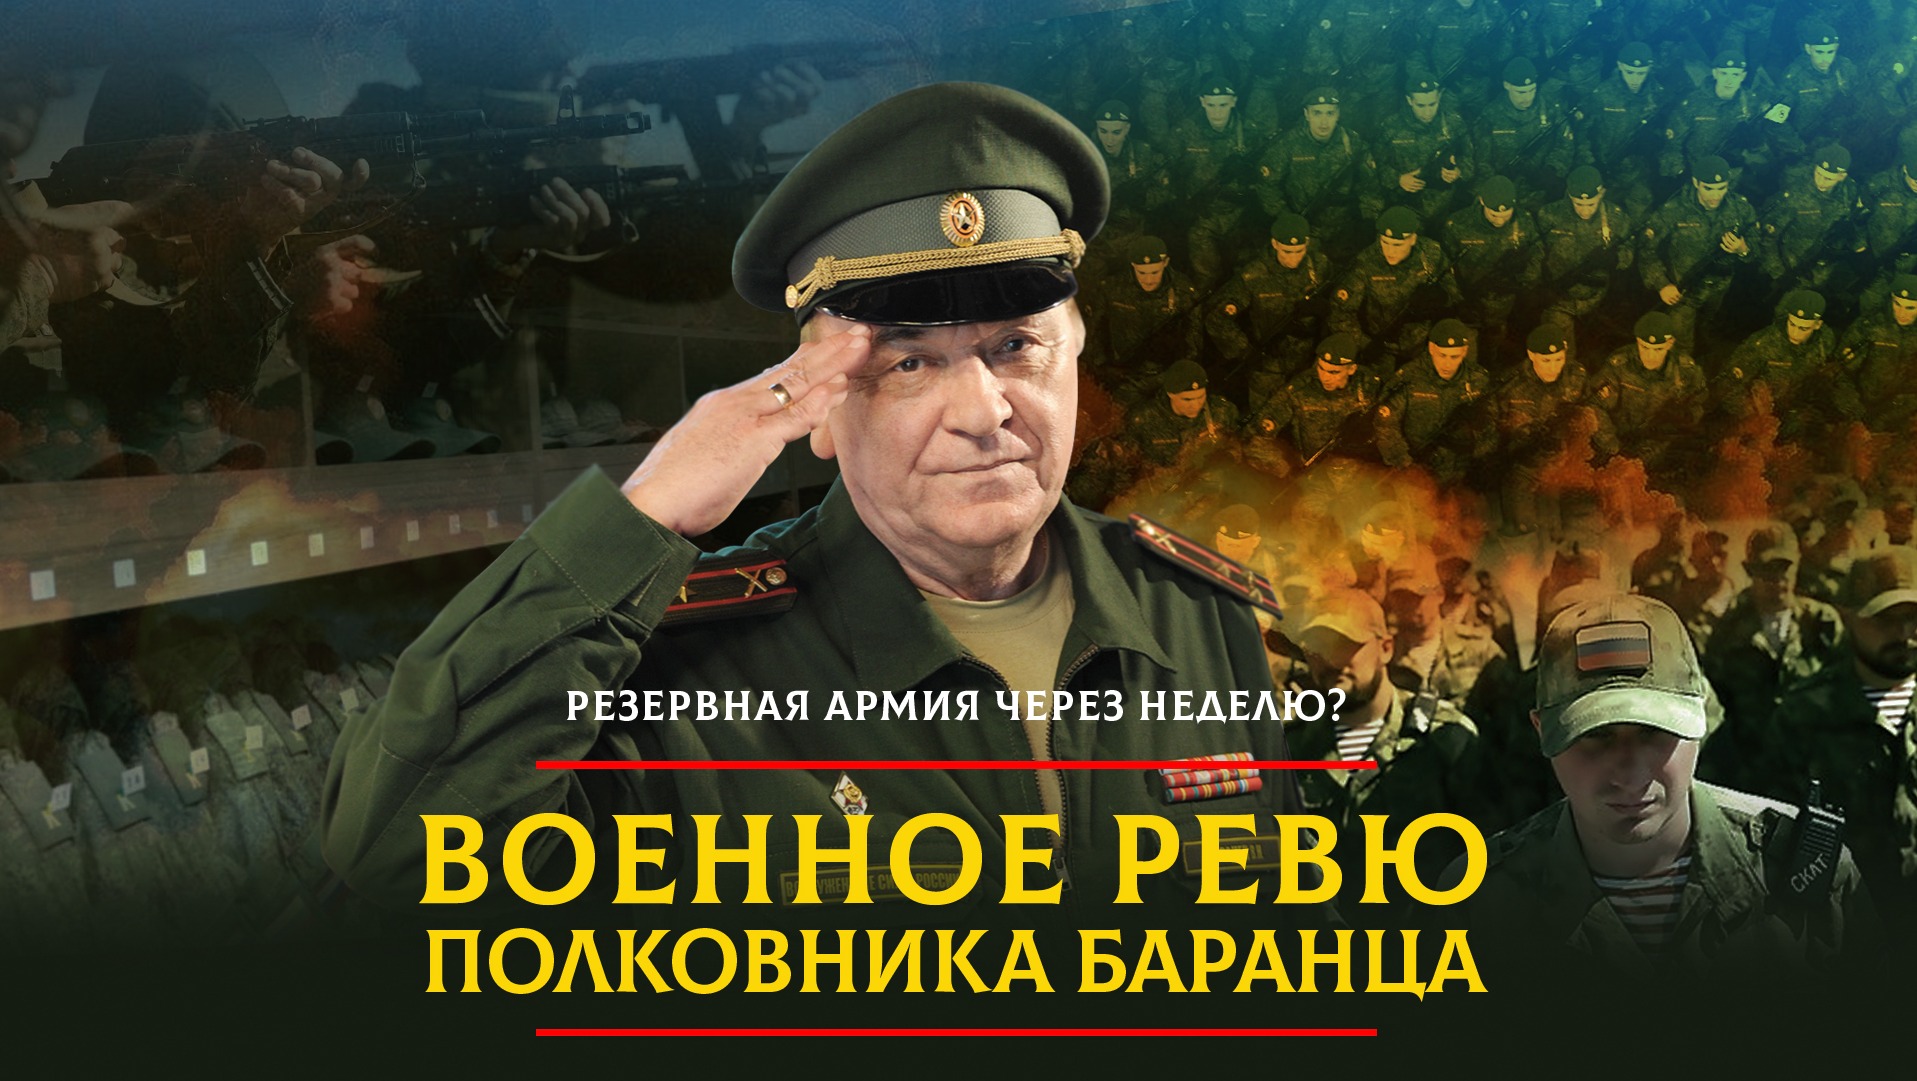 Рутуб комсомольская правда военное. Полковник Баранец.